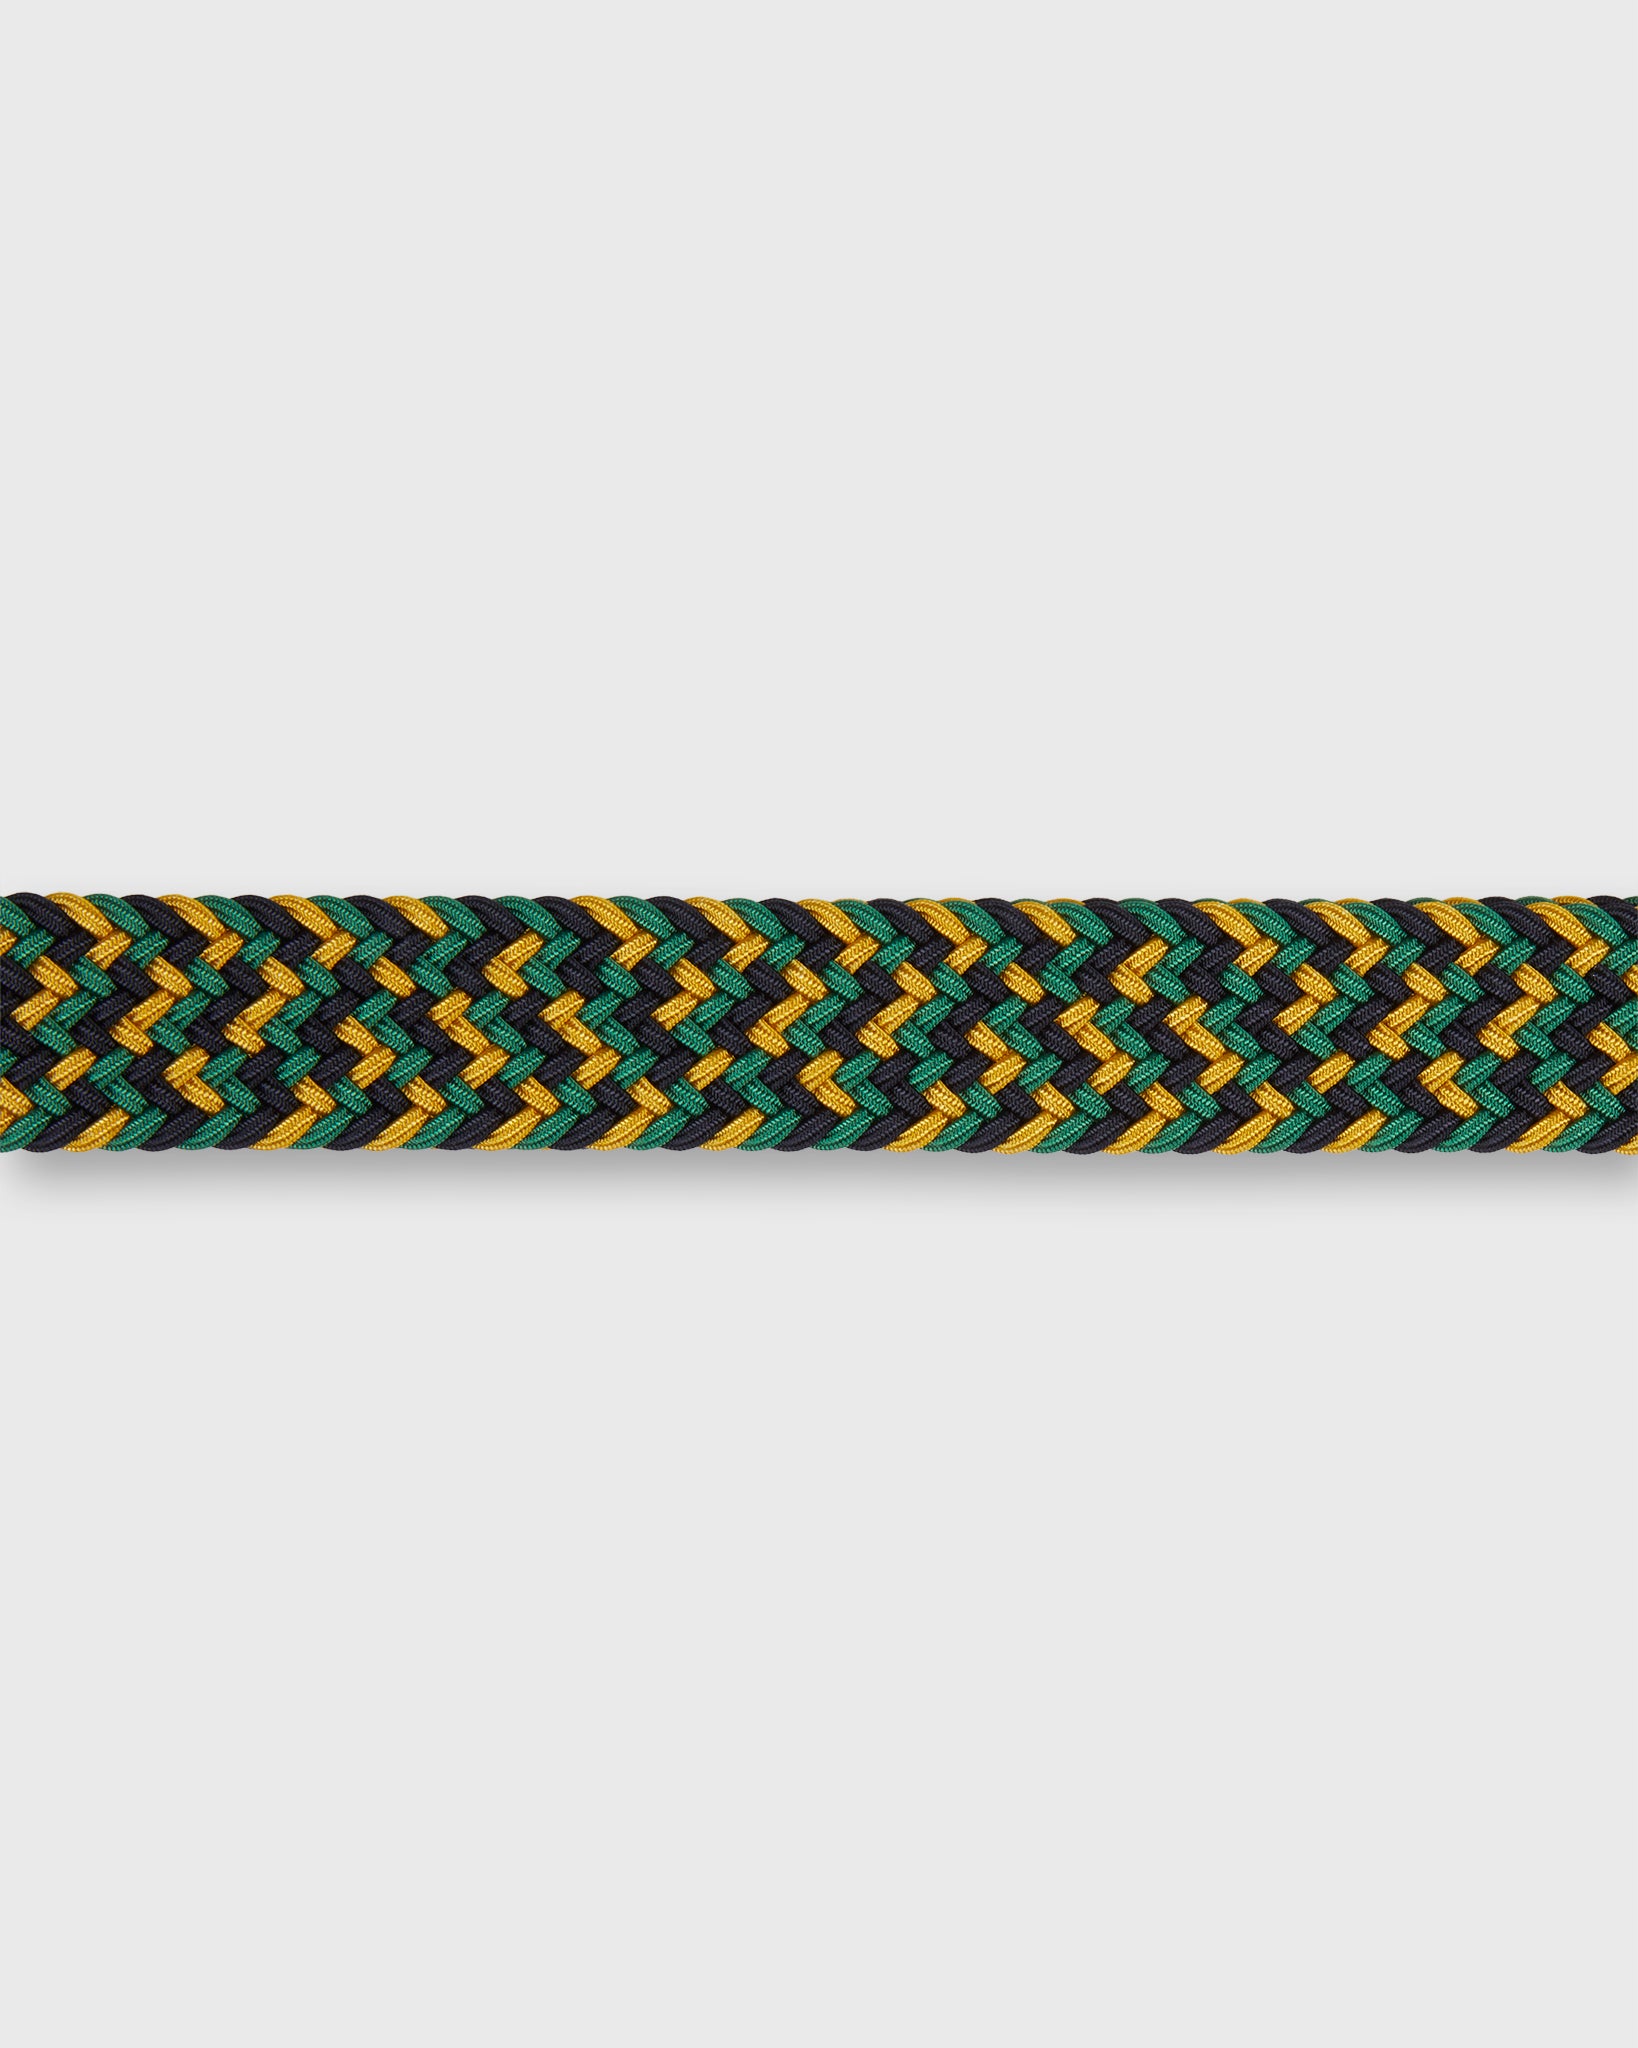 1.25" Woven Elastic Belt in Gold/Green/Navy